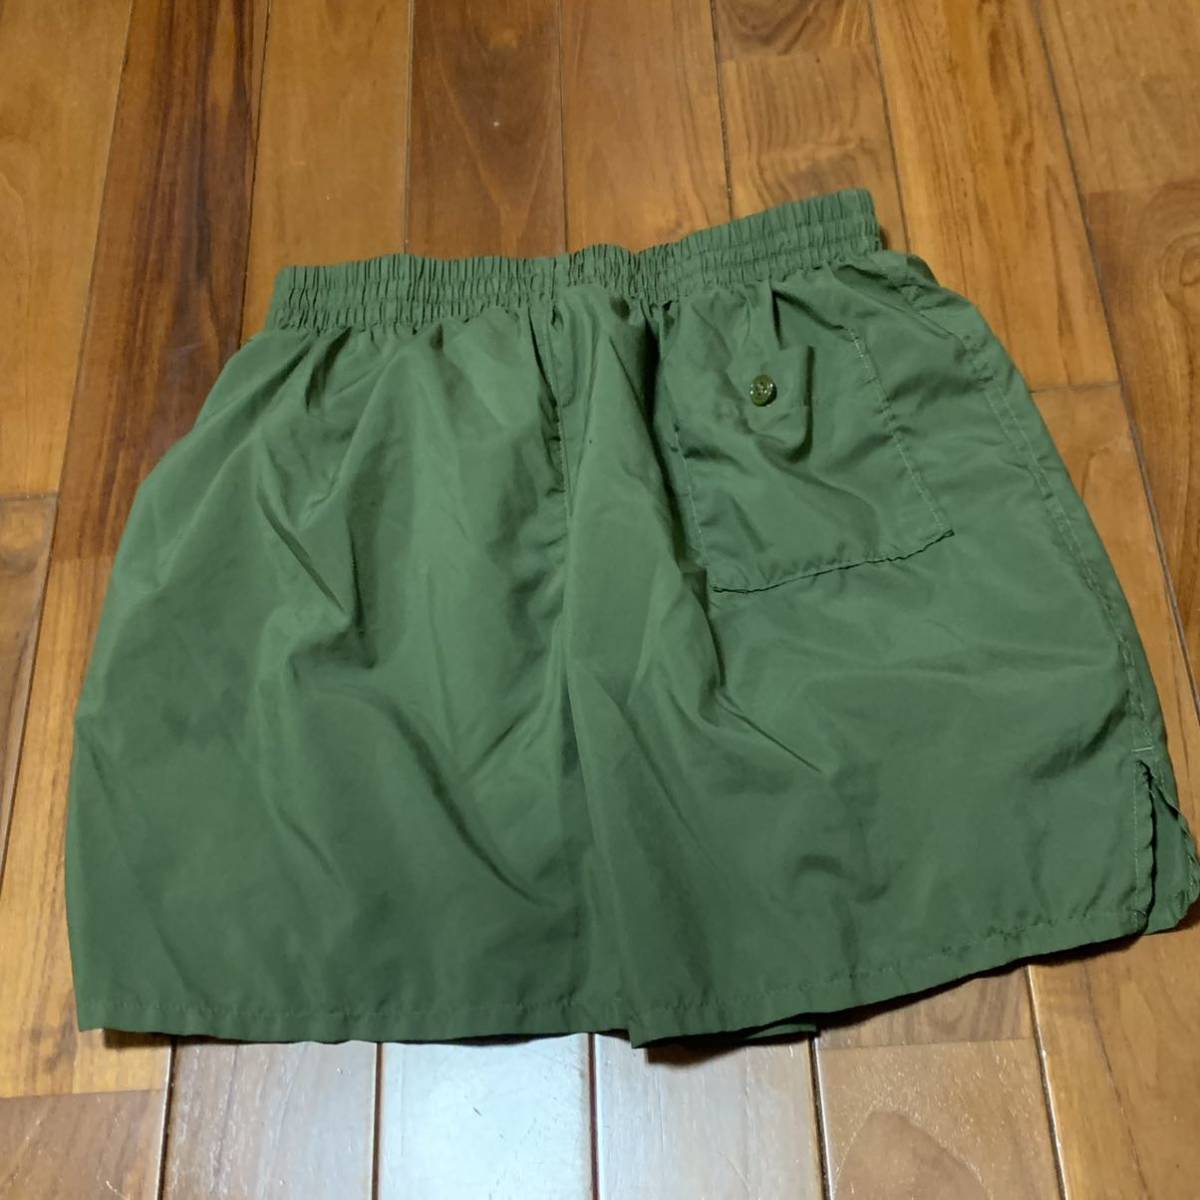  Okinawa вооруженные силы США сброшенный товар тренировочные штаны шорты бег спорт уличный .toreLARGE OD ( контрольный номер Z214)